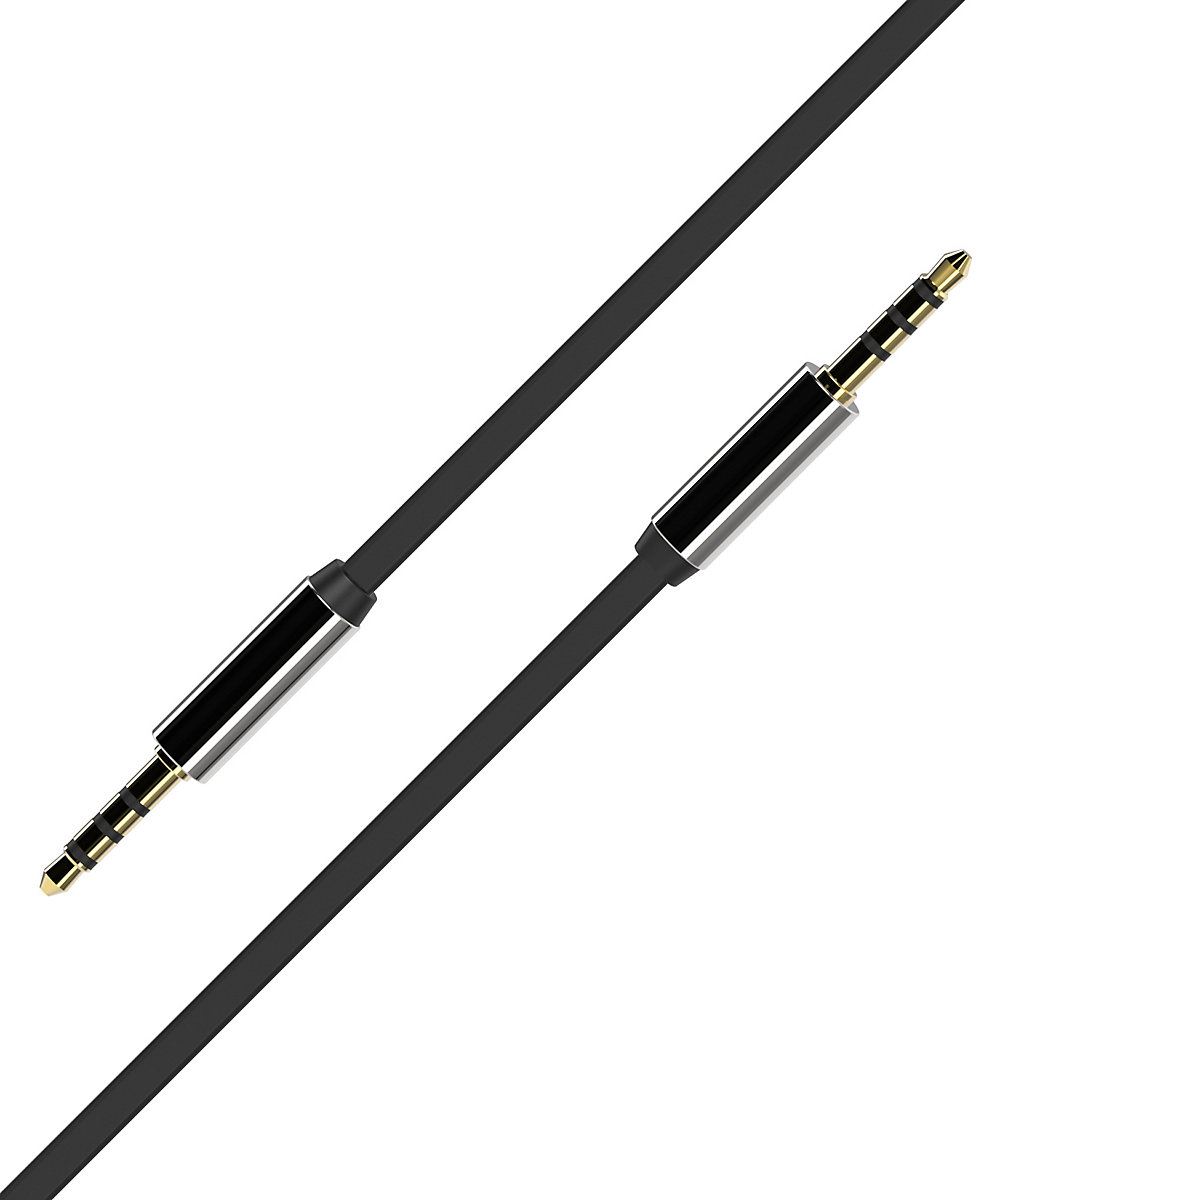 Xlayer KABEL Kabel Audio flat AUX Kabel 3 5mm Klinkenkabel 1.0 m Black